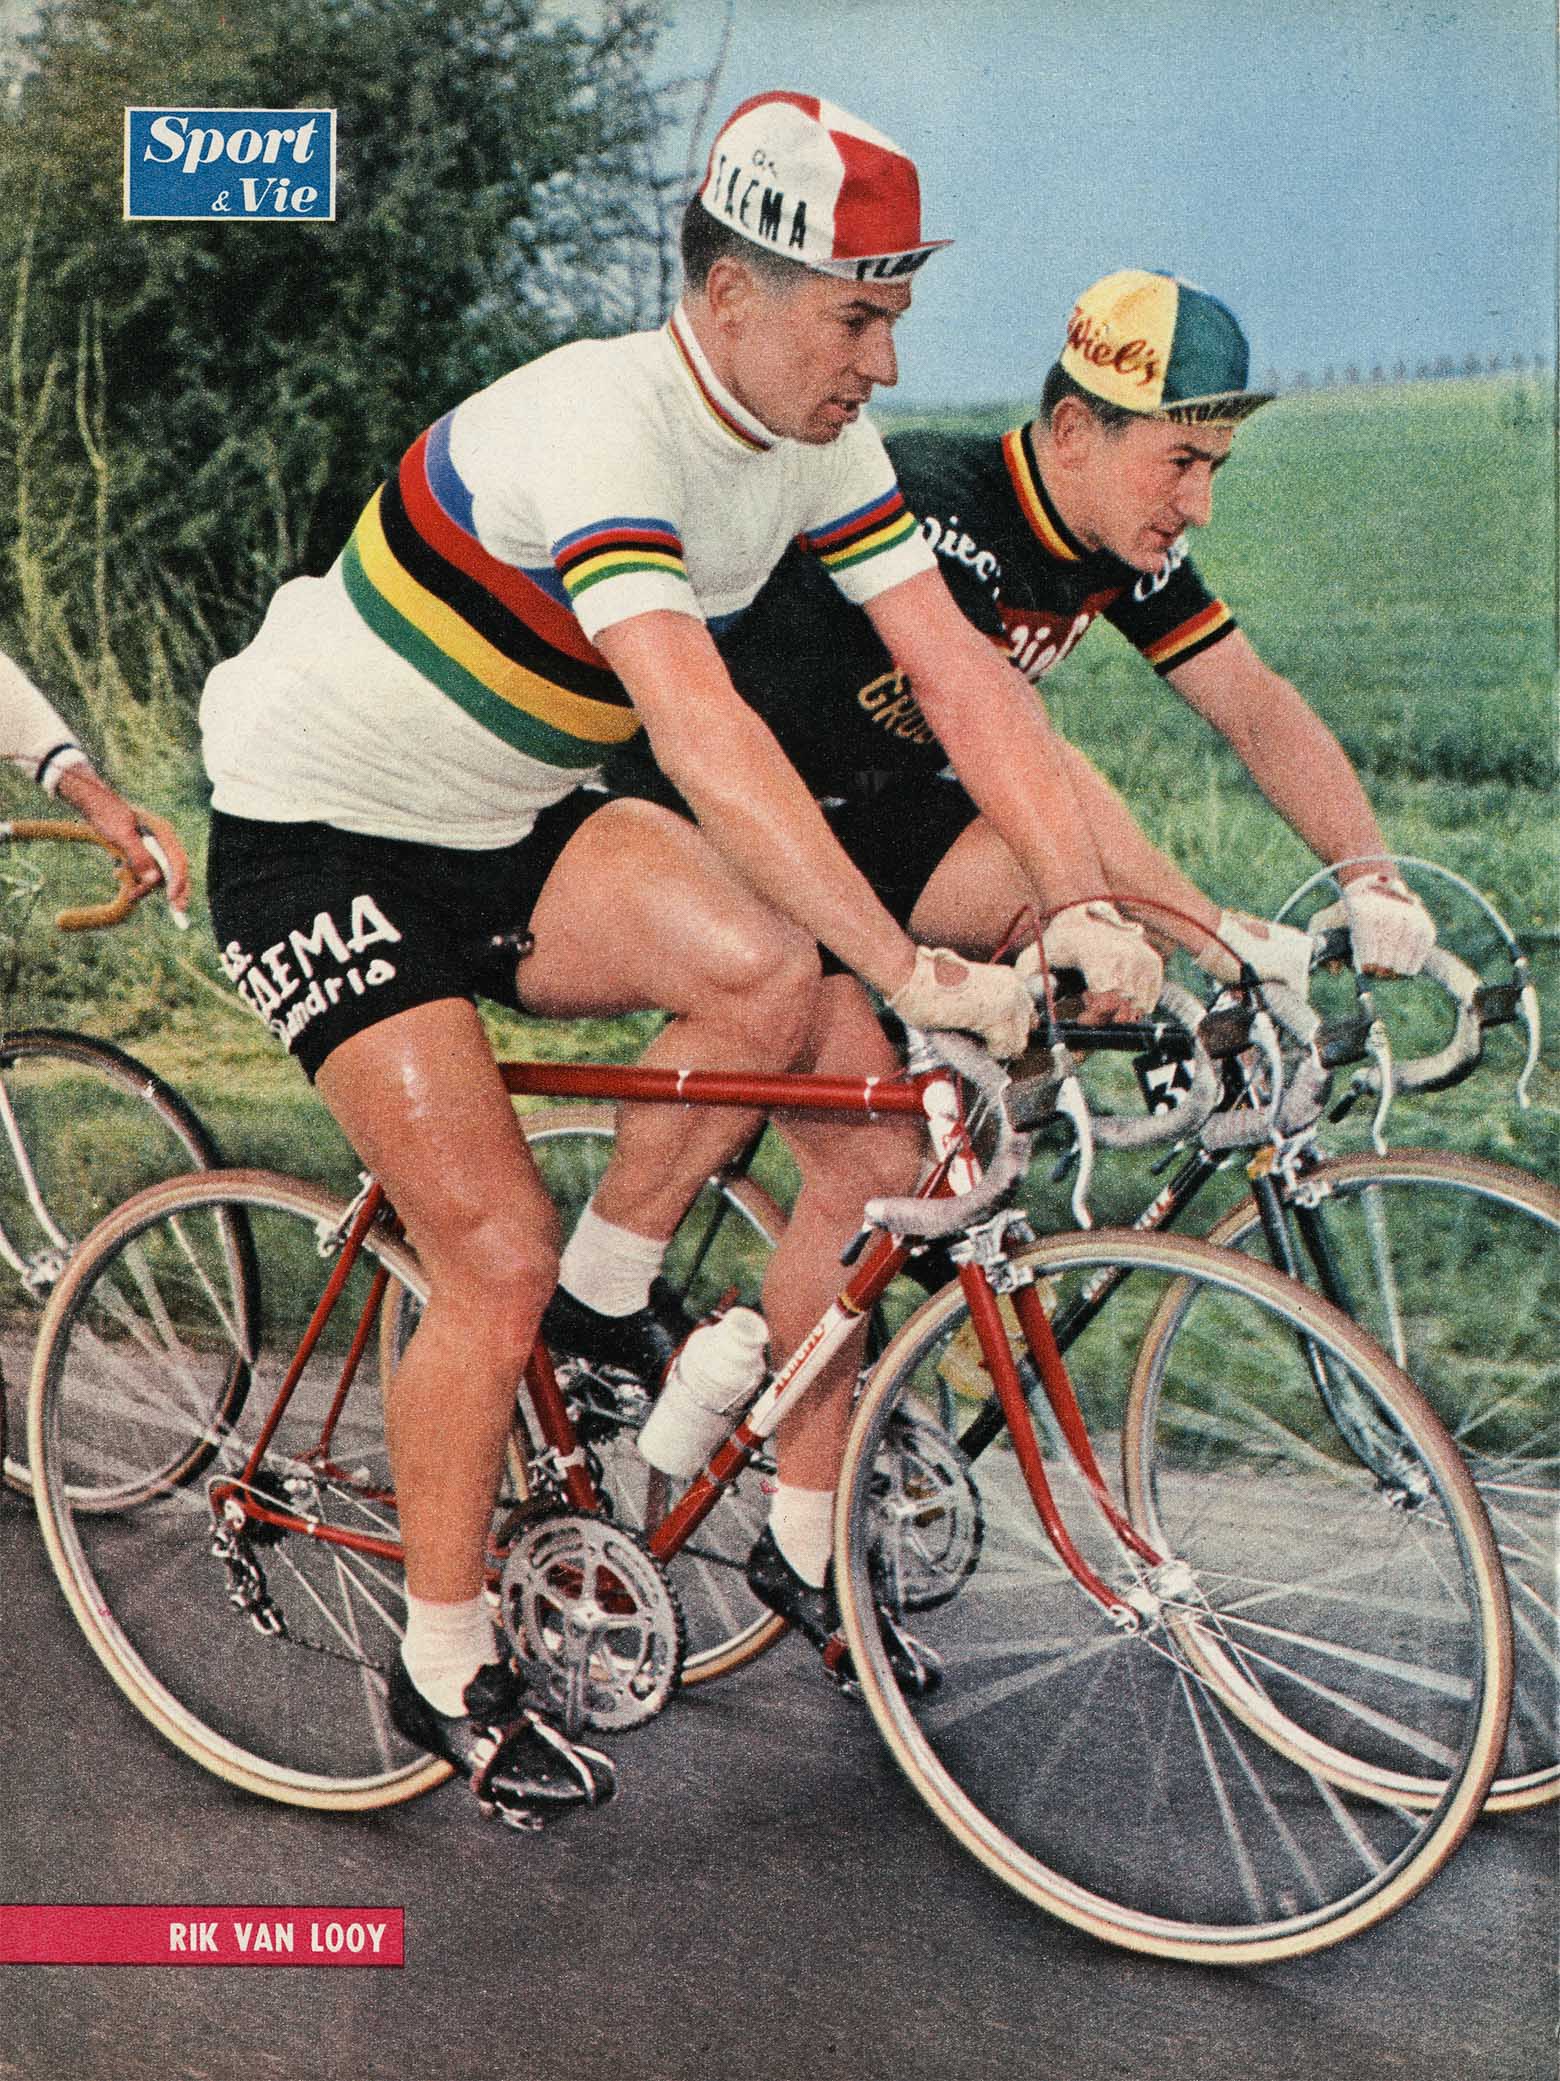 Sport & Vie 1962? - Rik Van Looy main image